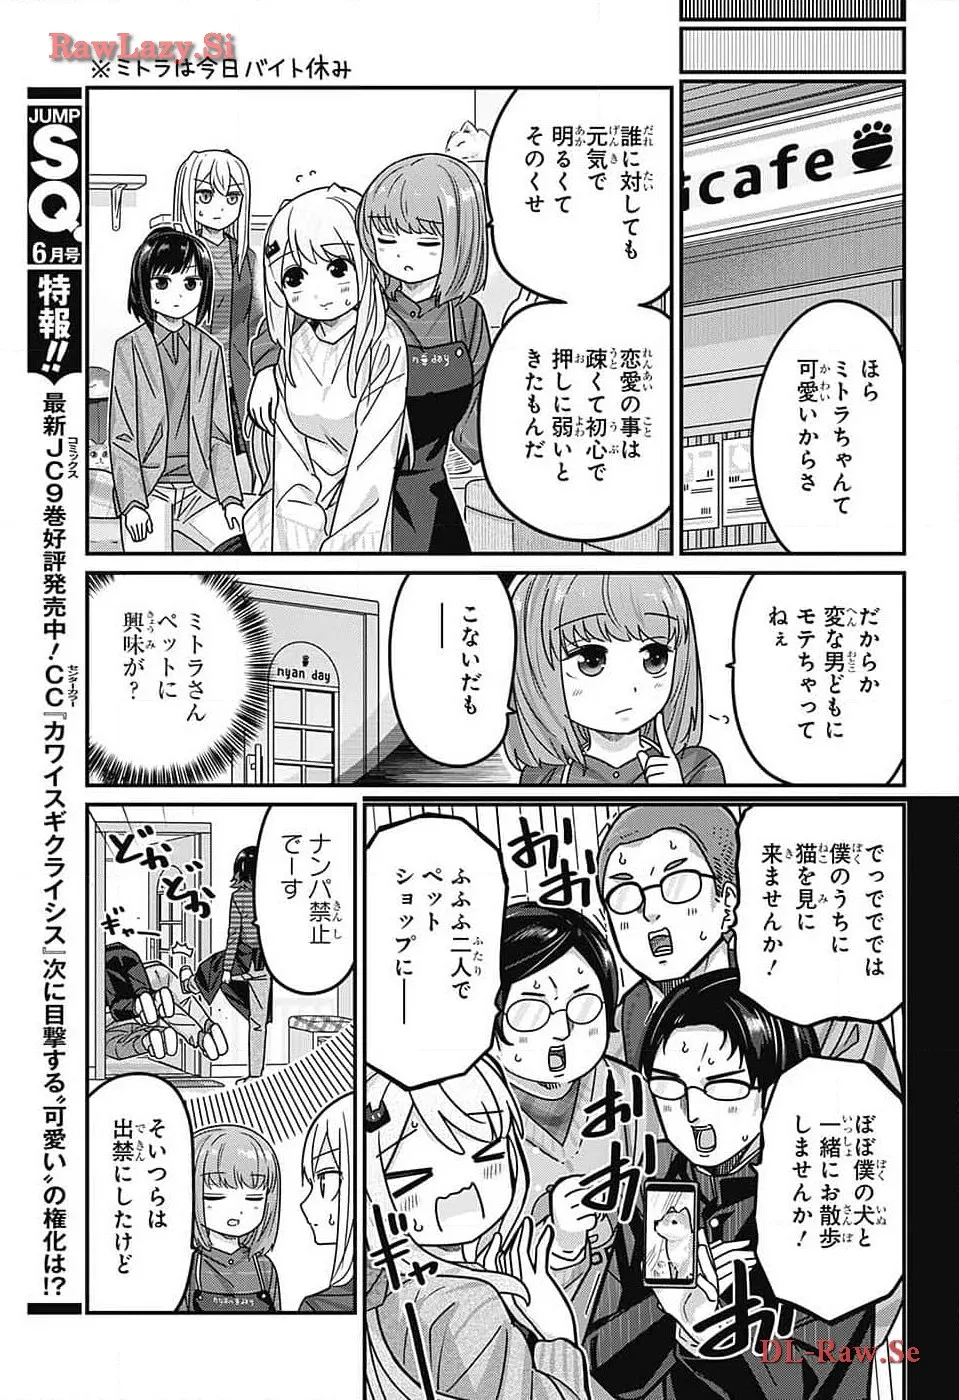 Kawaisugi Crisis - Chapter 109 - Page 3